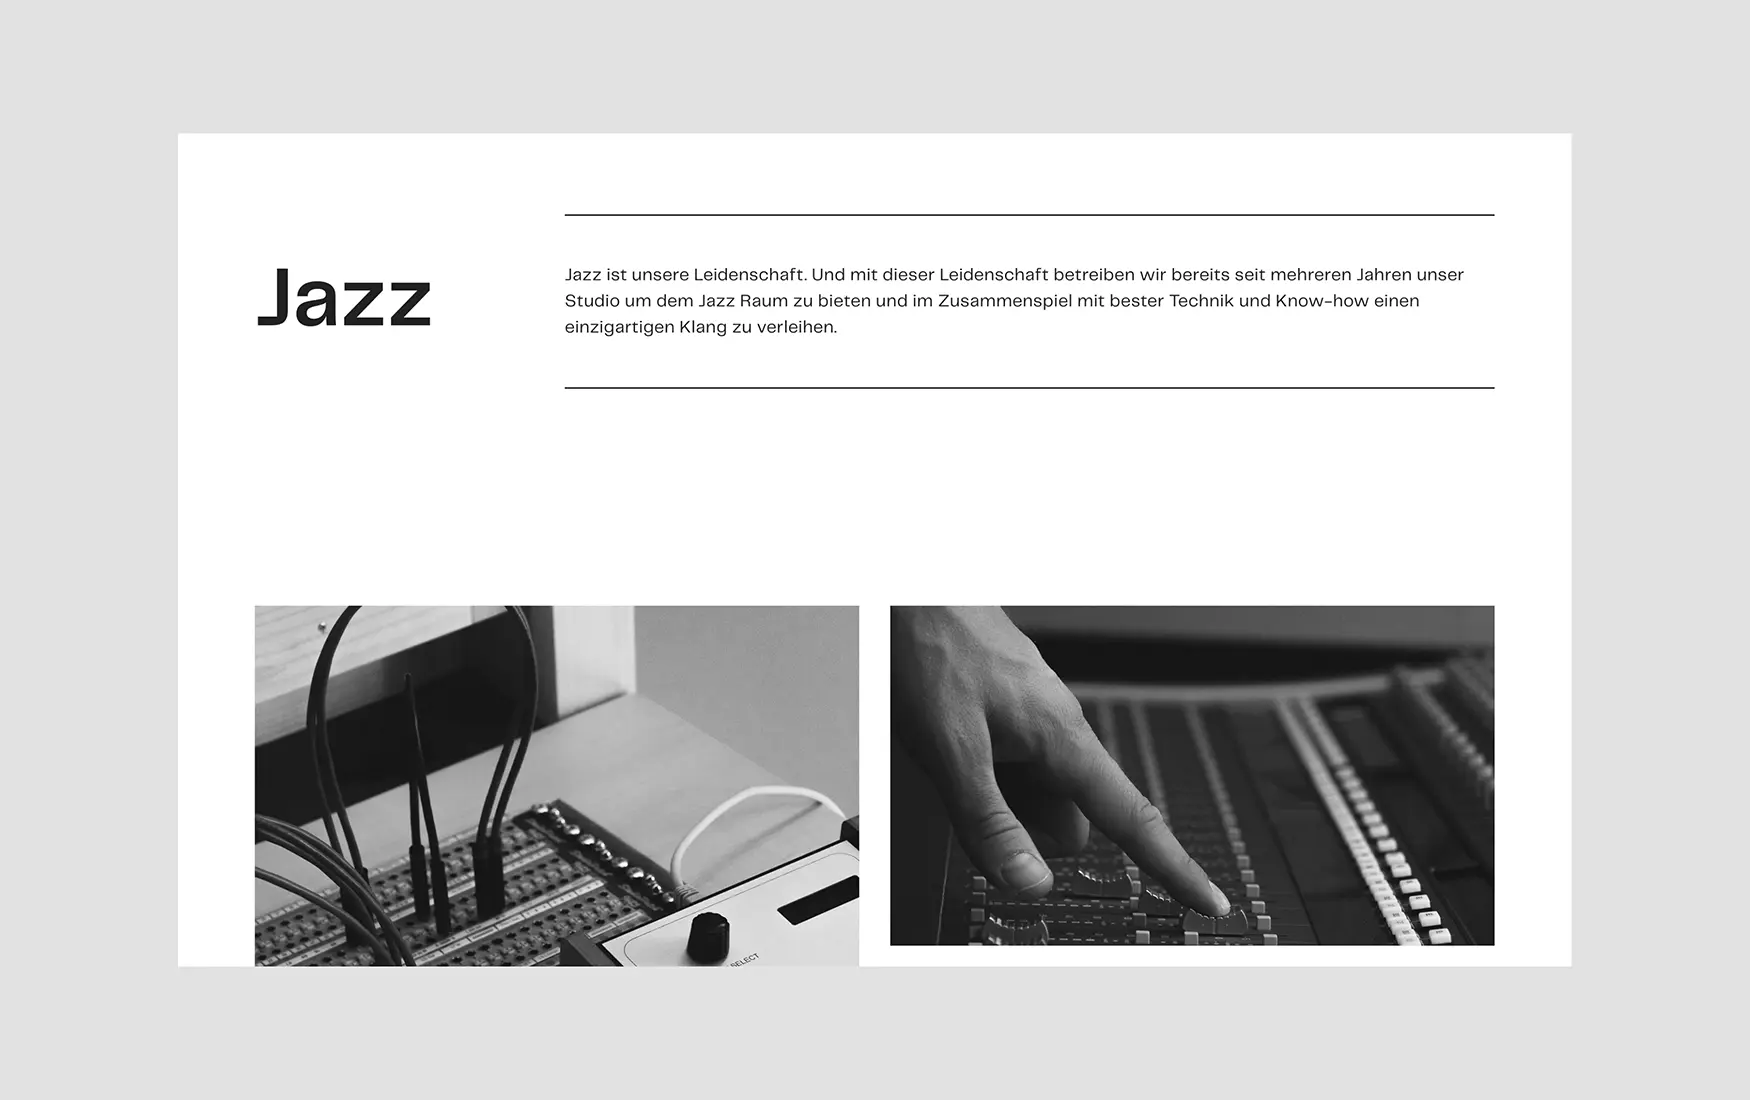 Screenshot der Website kyberg-studio.de